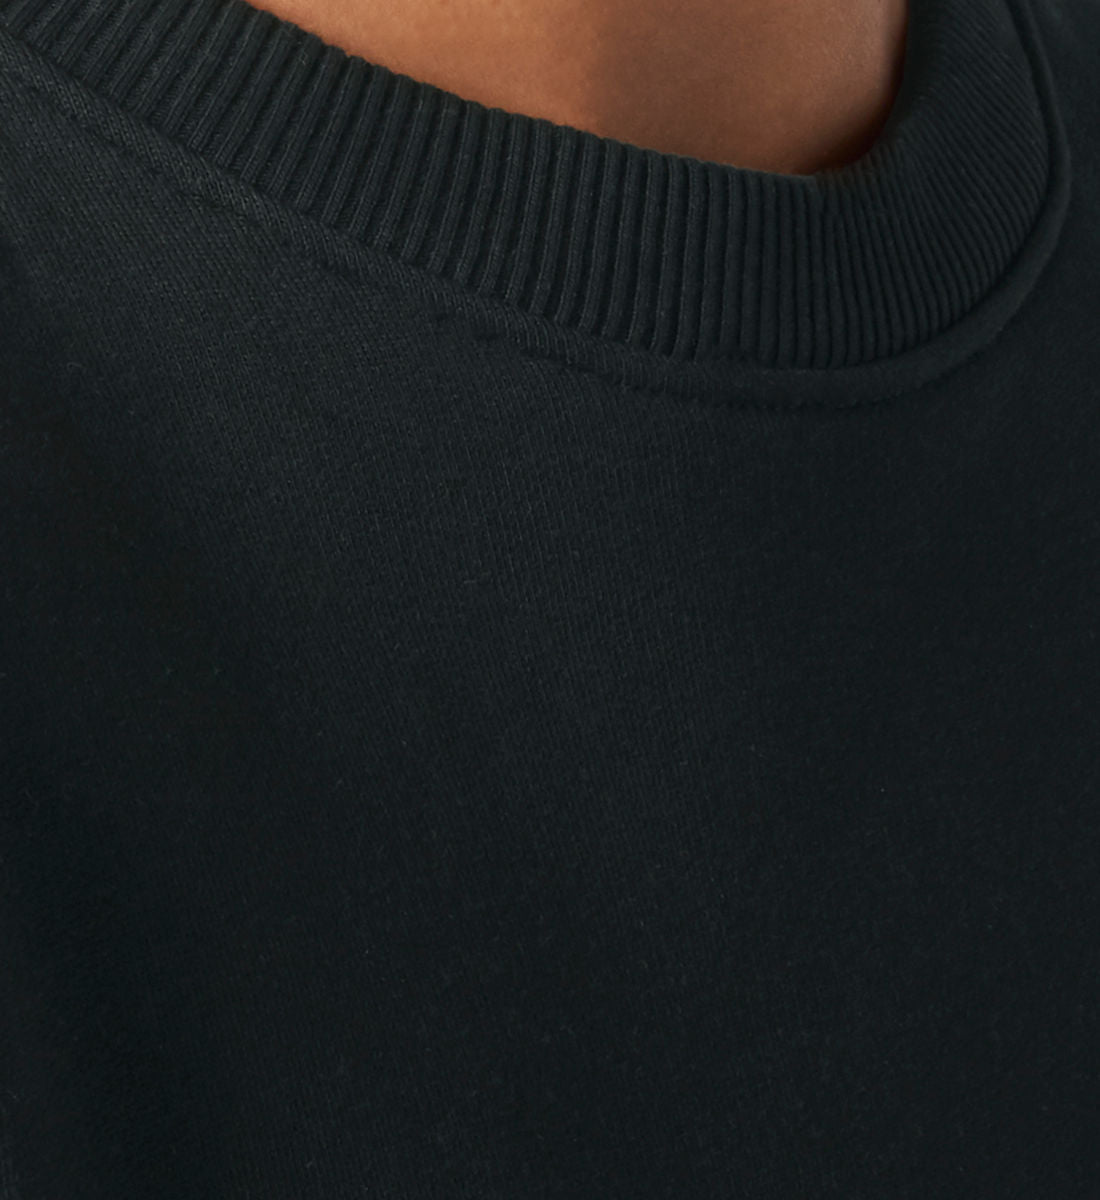 Schwarzes Sweatshirt Unisex für Frauen und Männer bedruckt mit dem Design der Roger Rockawoo Kollektion But First Yoga